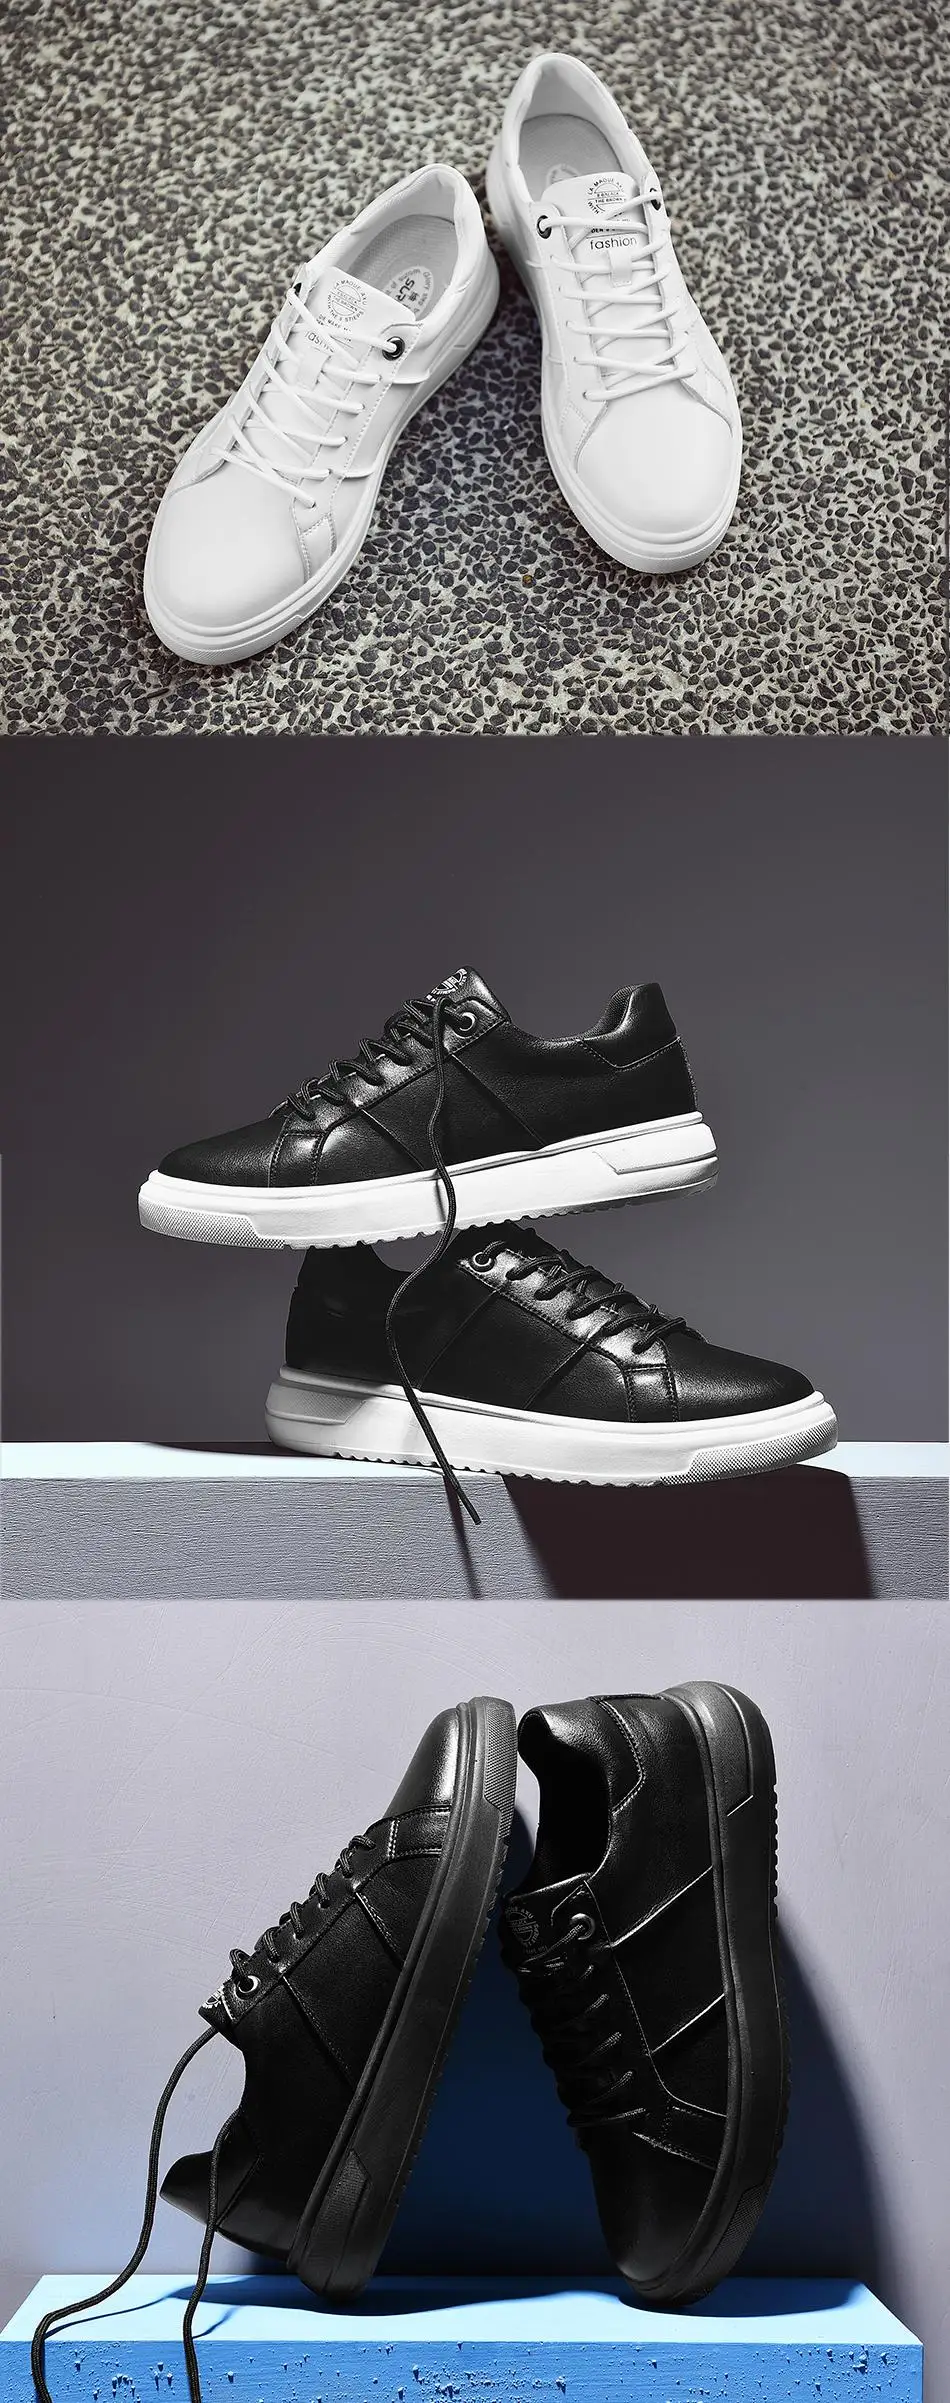 SUROM/мужские новые дизайнерские красовки г., мужская повседневная обувь, впитывающая пот классические кеды на плоской подошве, износостойкая обувь